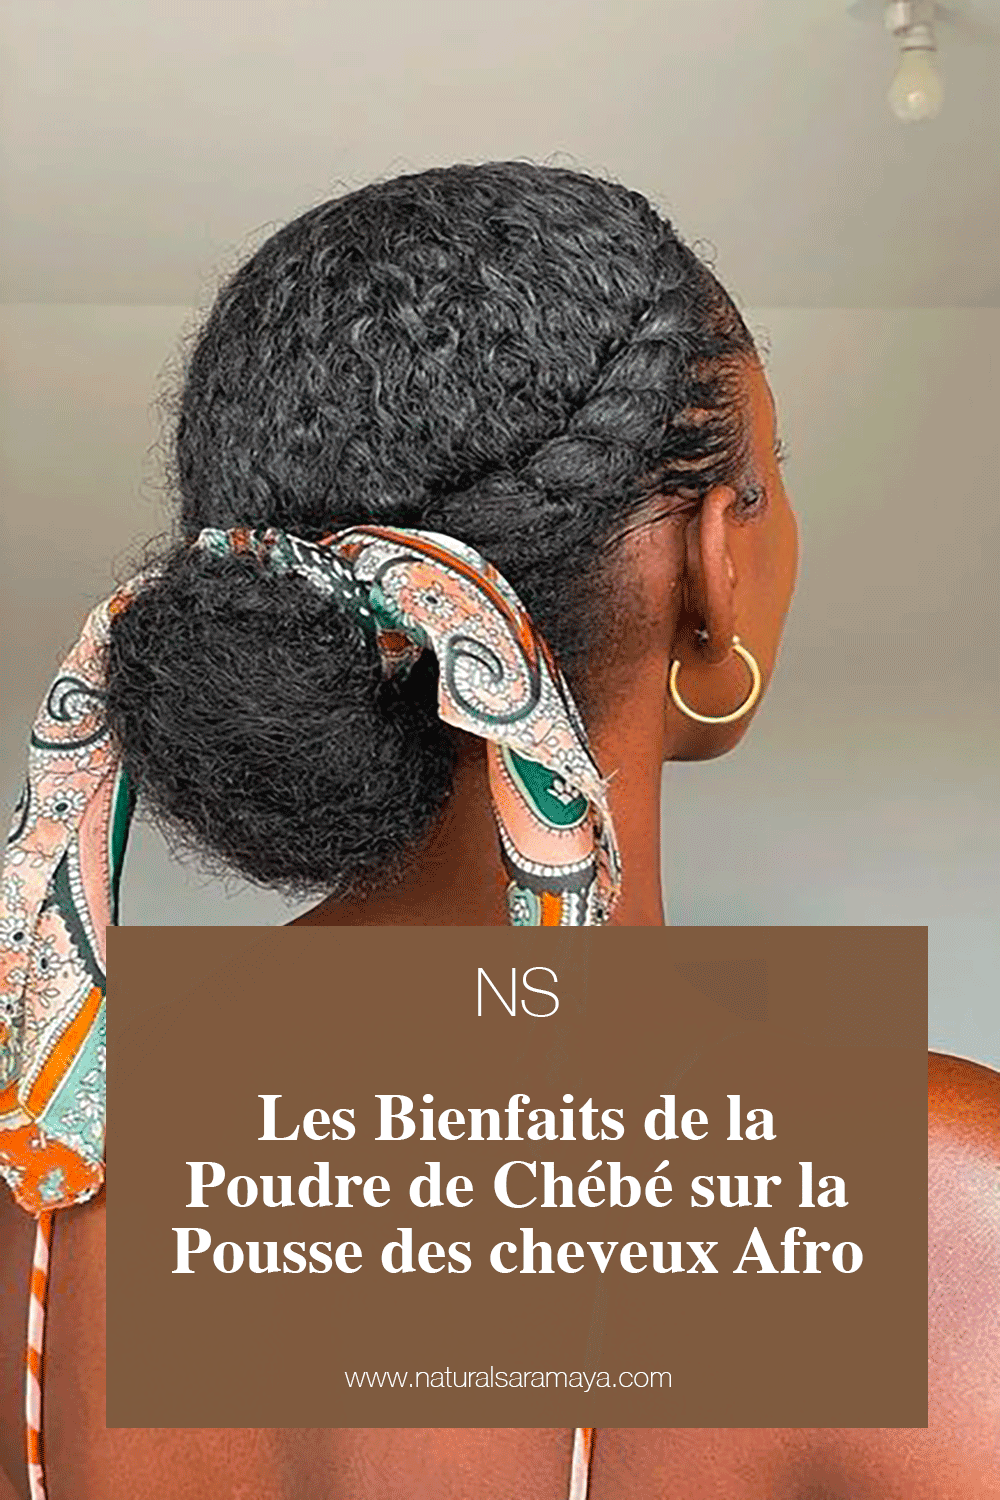 Les Bienfaits de la Poudre de Chébé sur la croissance des cheveux Afro ( Naniya Shea)